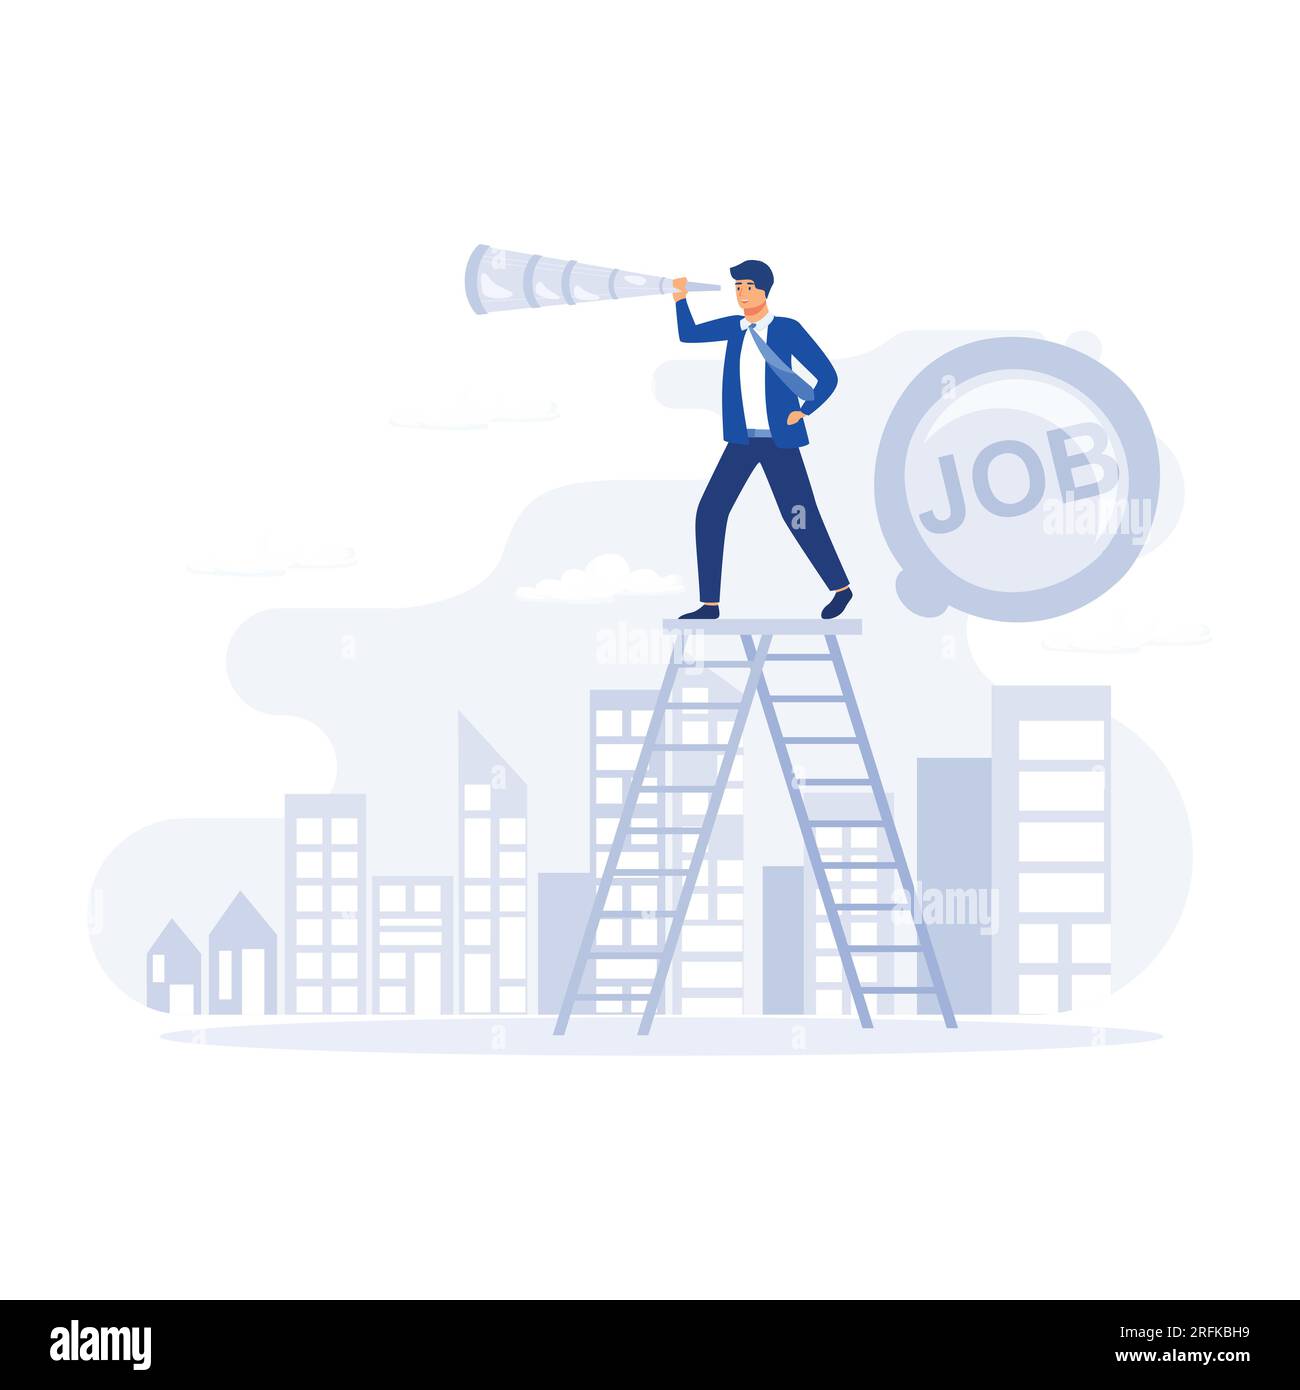 À la recherche d'un nouvel emploi, l'homme d'affaires grimpe une échelle sur la barre de recherche d'emploi avec binoculaire pour voir l'opportunité, illustration moderne vectorielle plate Illustration de Vecteur